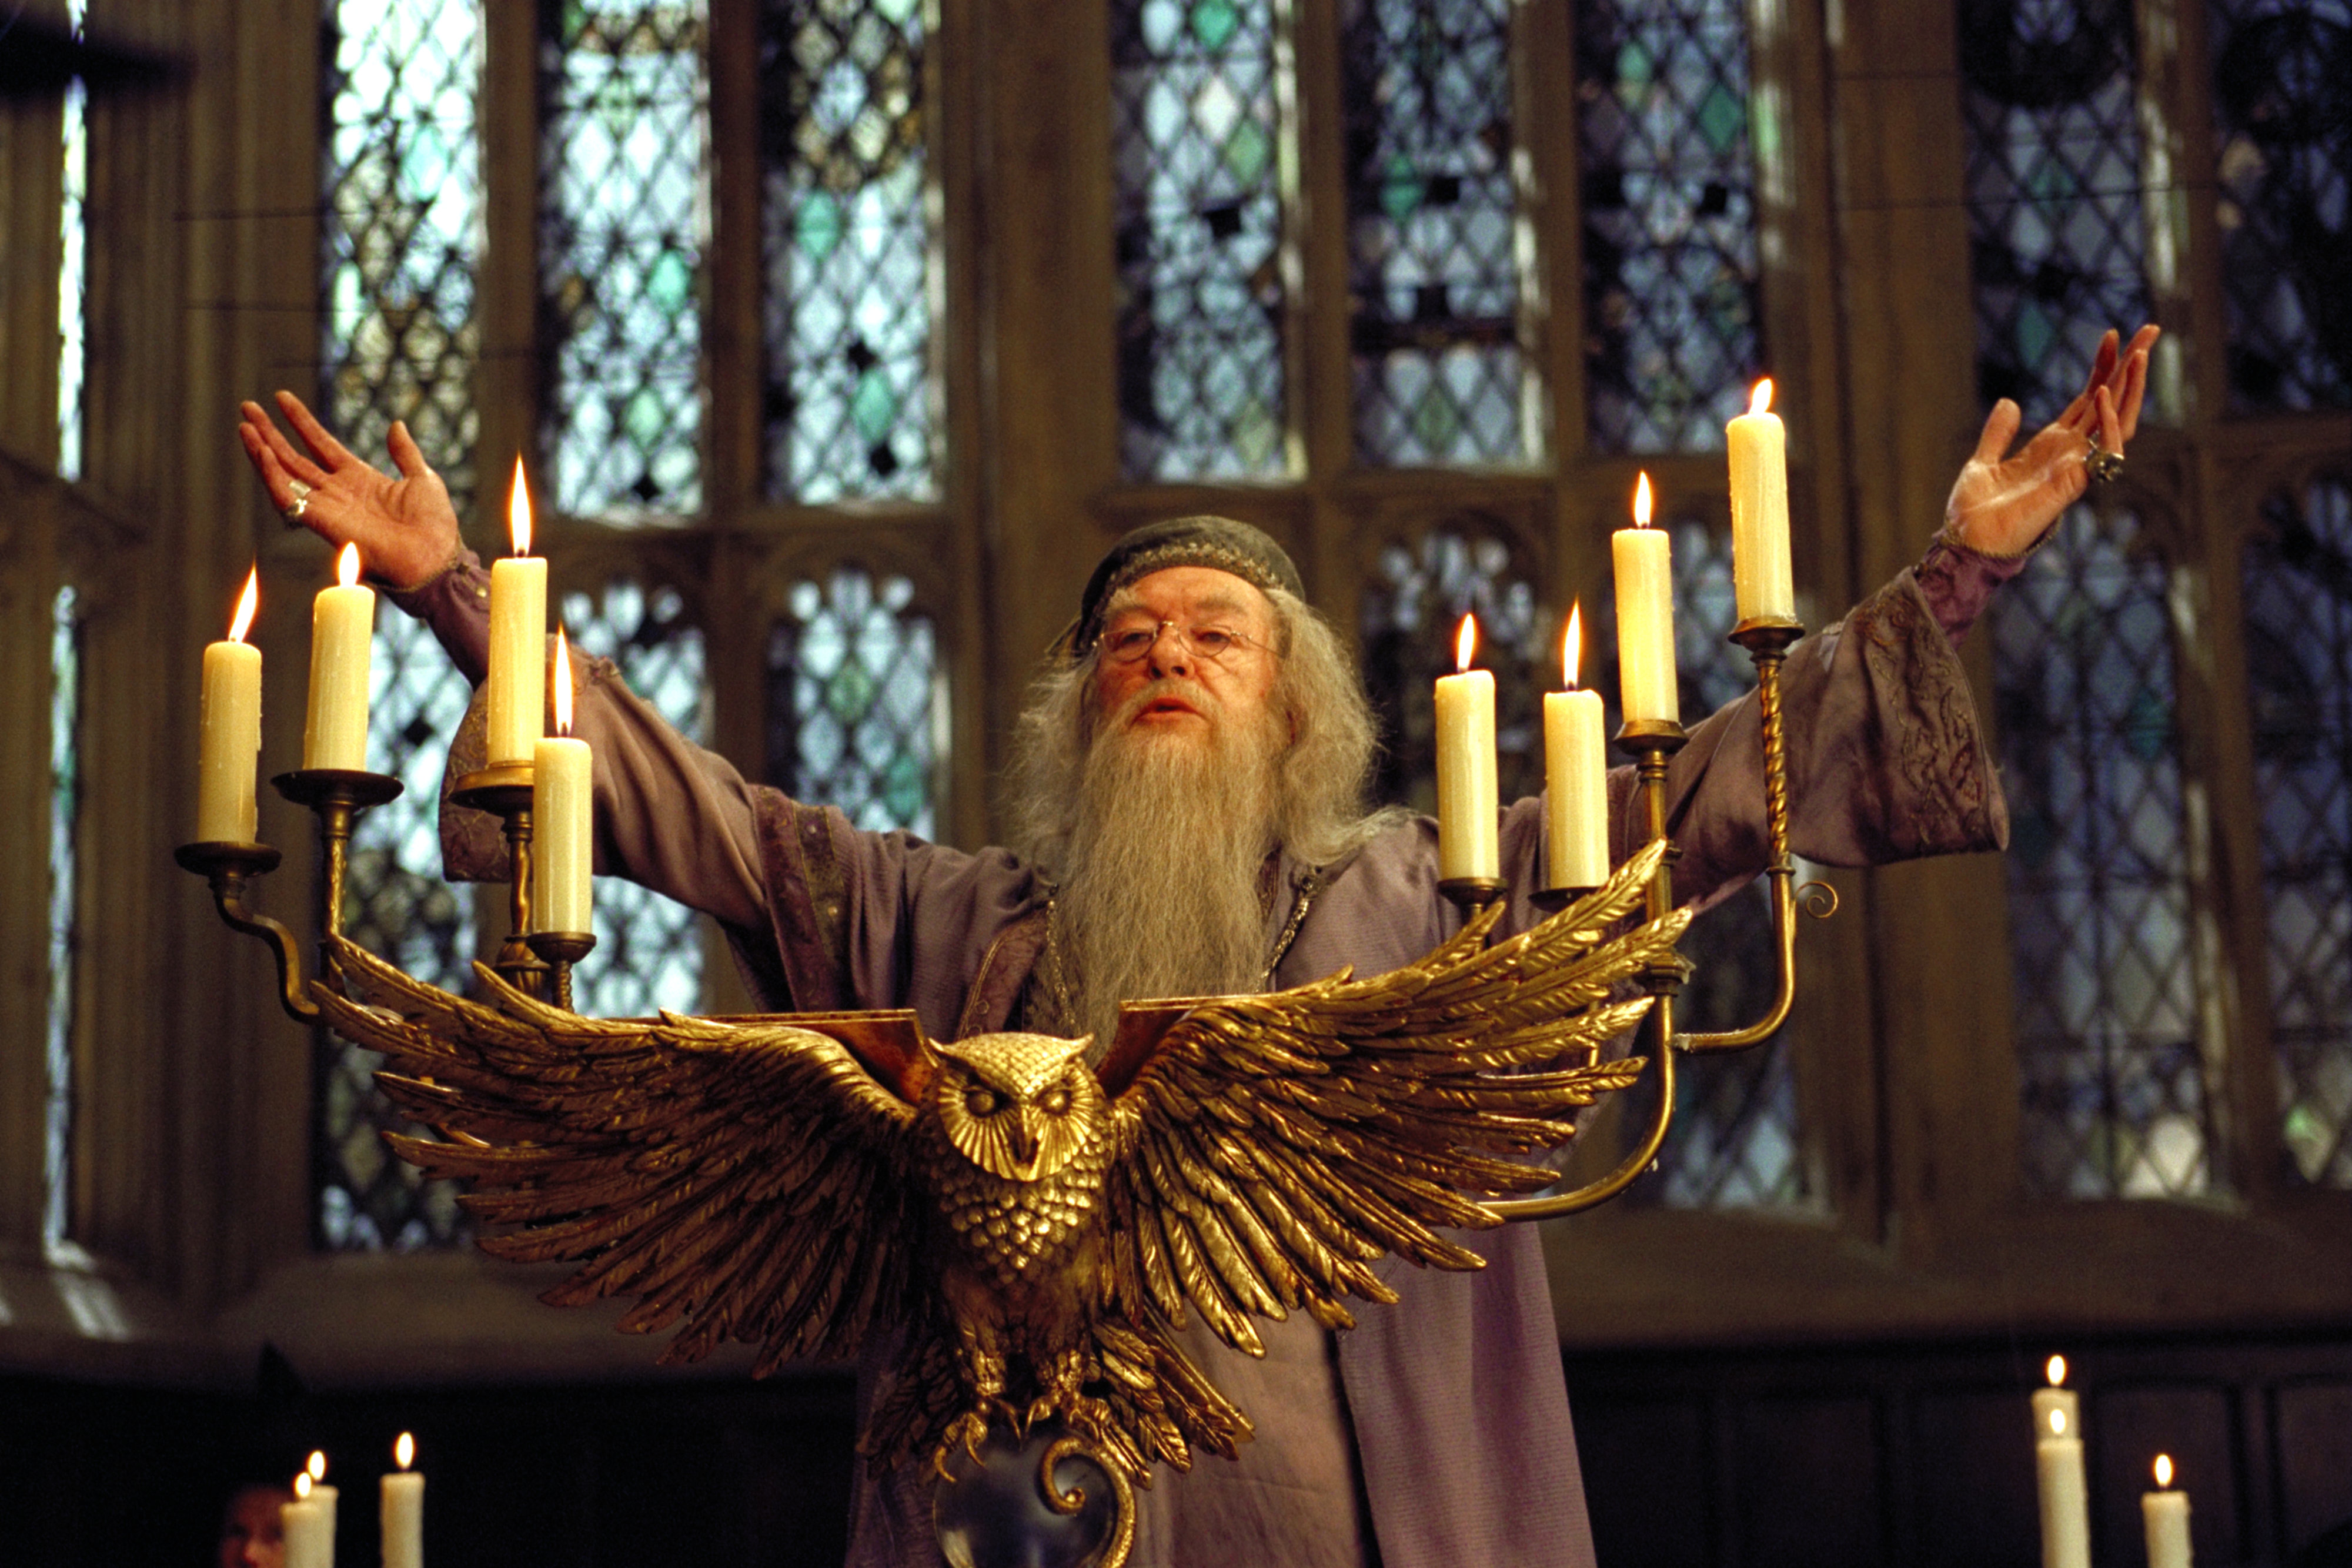 the secrets of dumbledore book